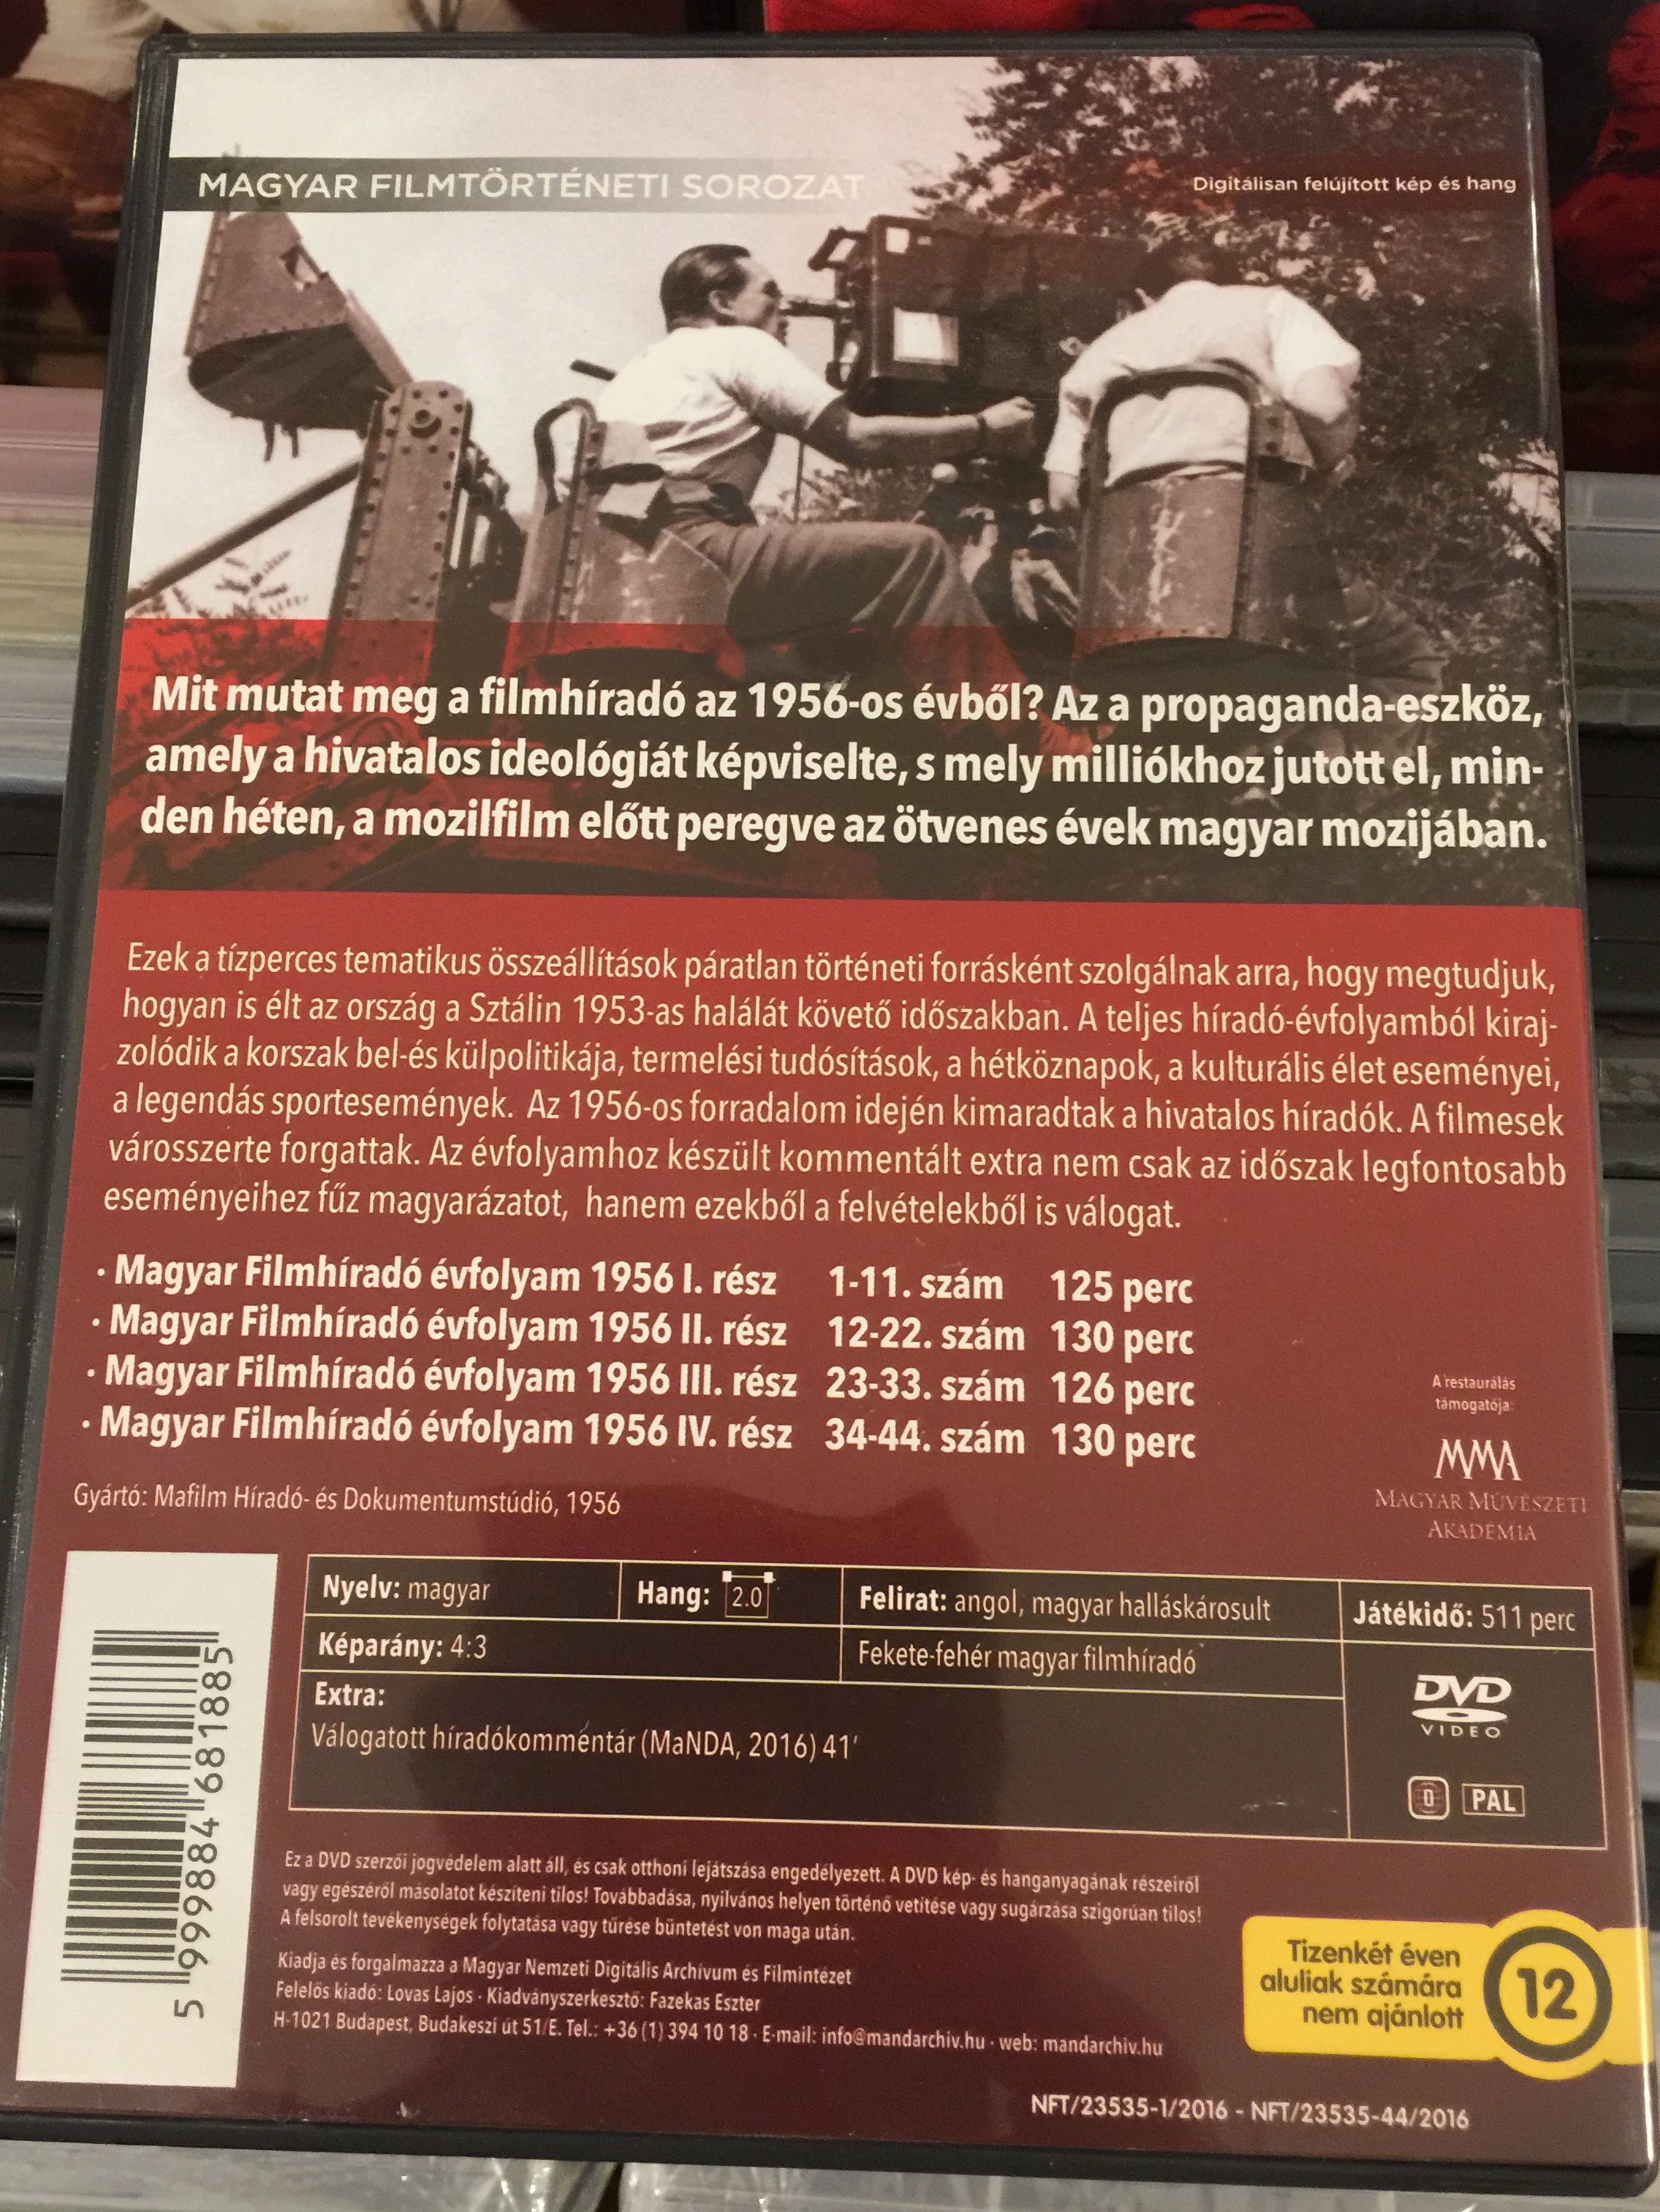 Magyar Filmíradó évfolyam - 1956 DVD Terror és forradalom 3.JPG